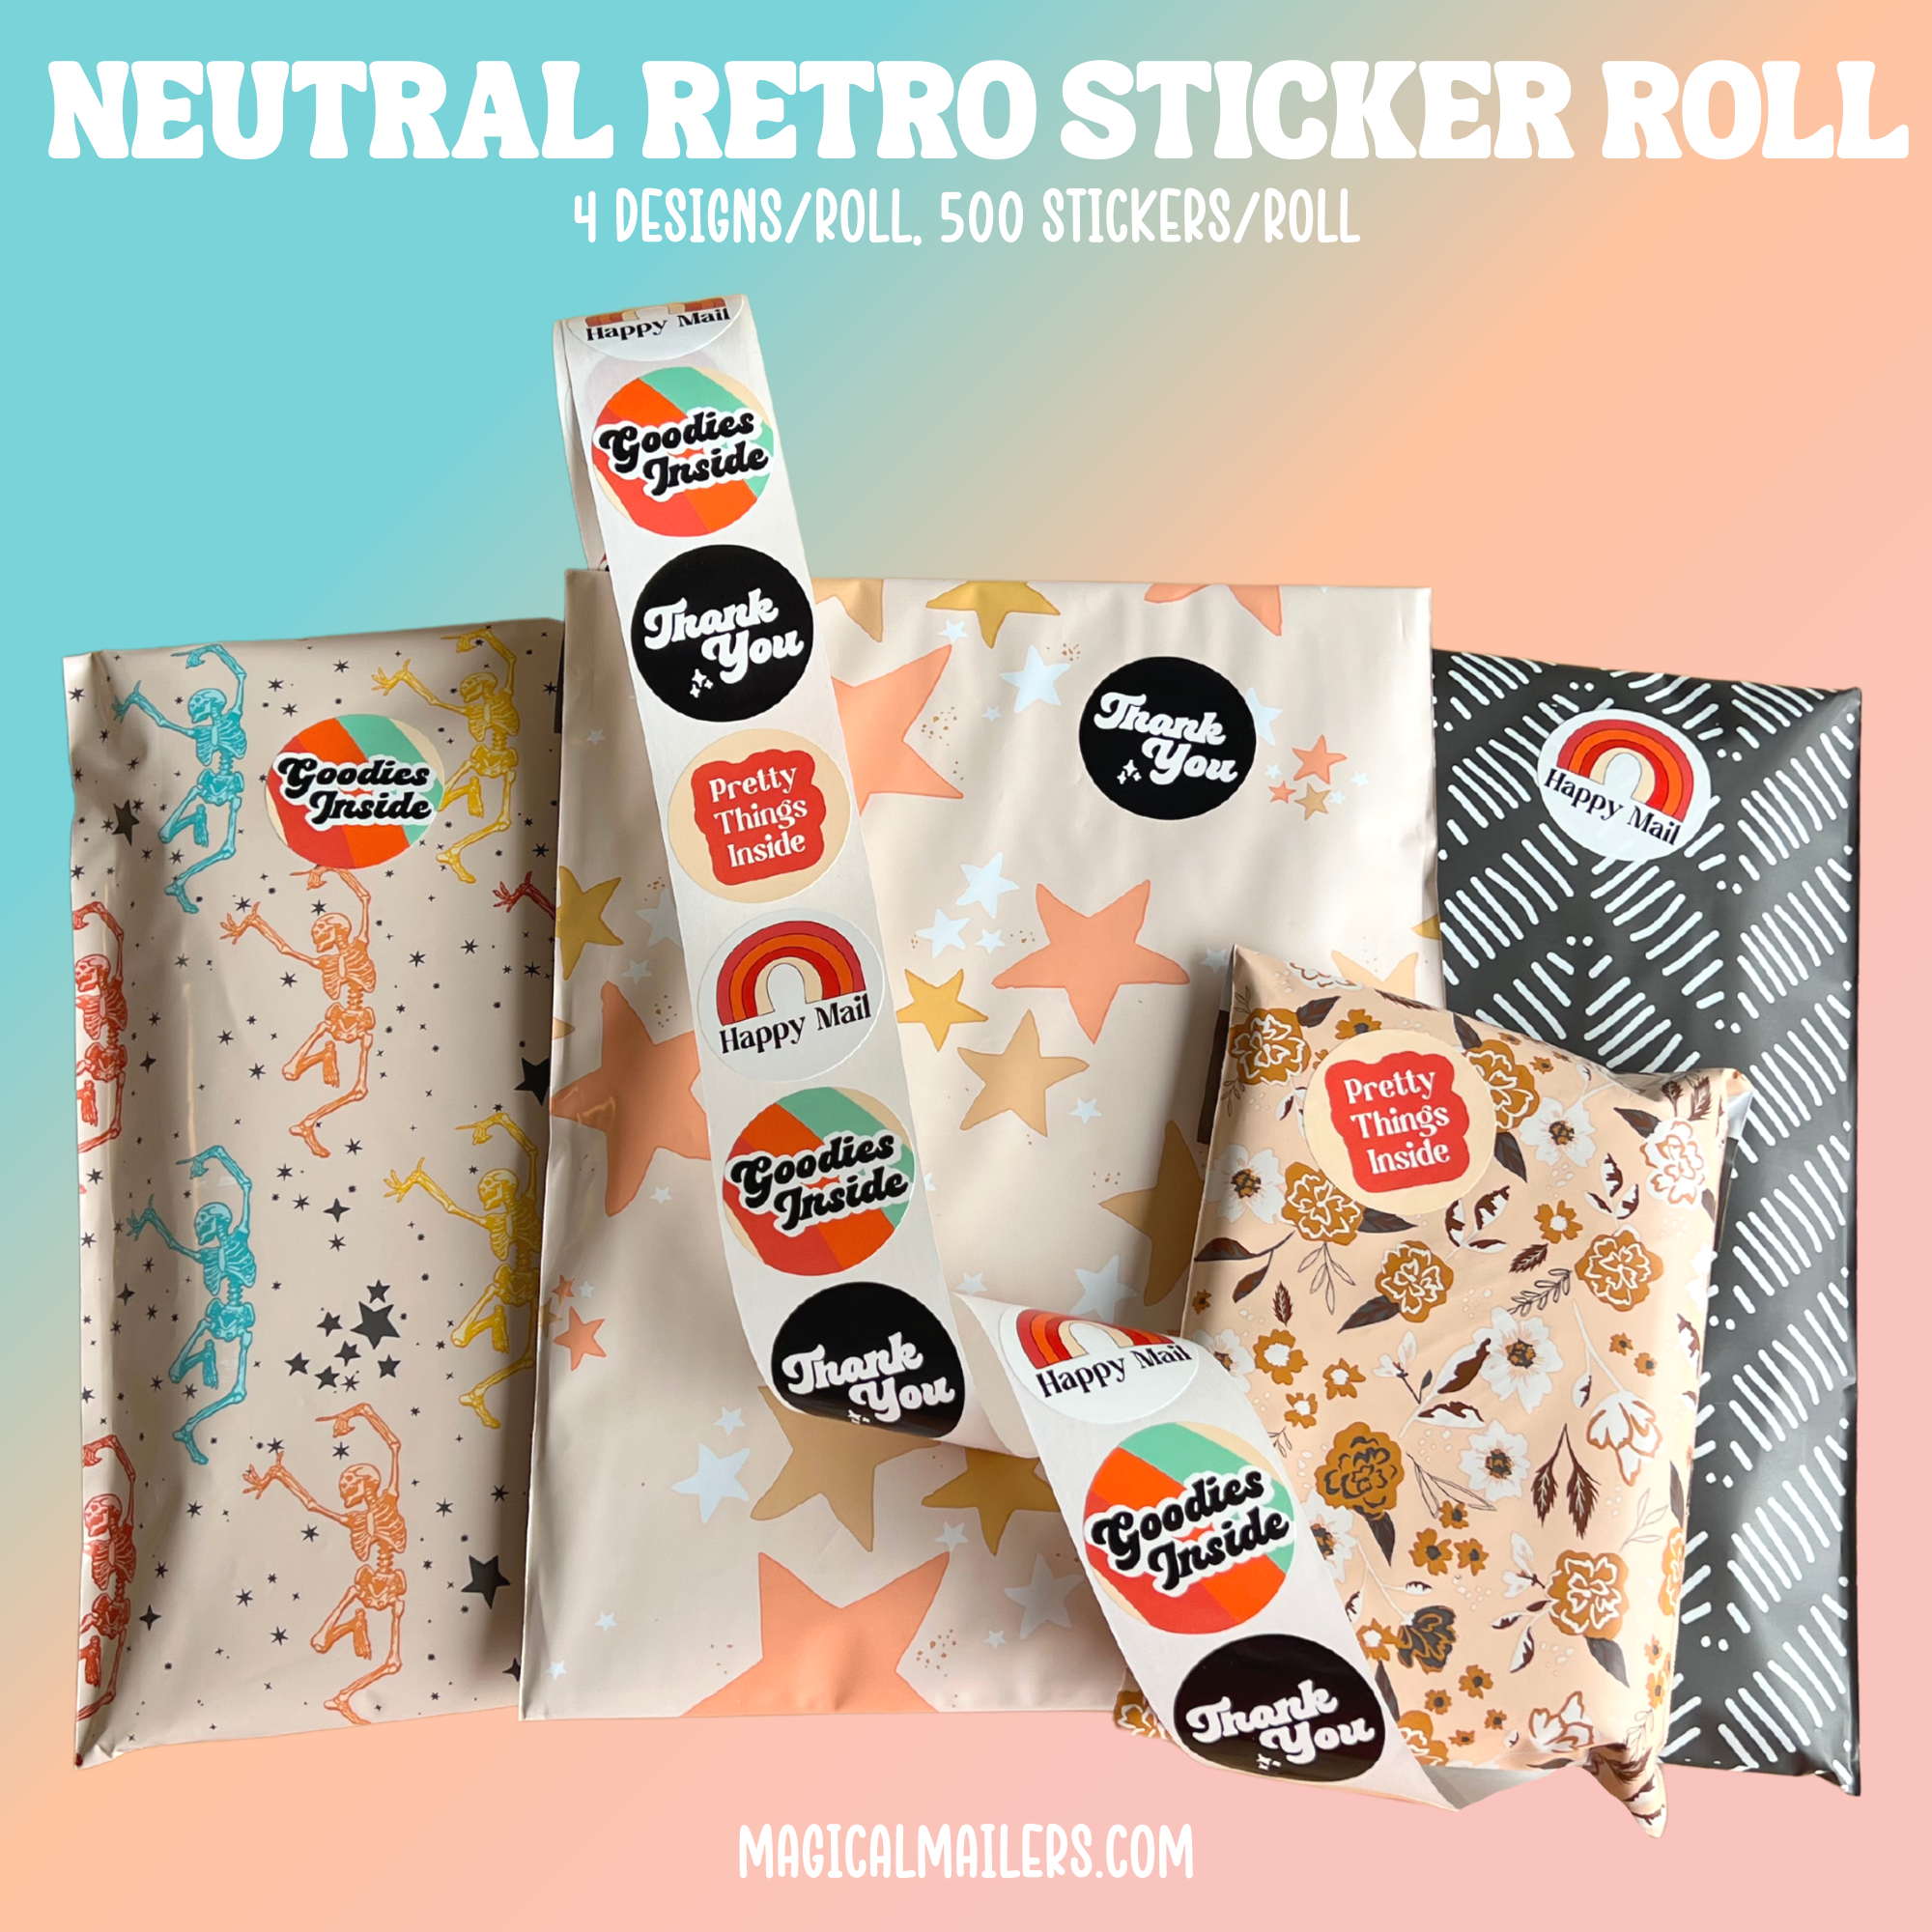 Neutral Retro Sticker Roll